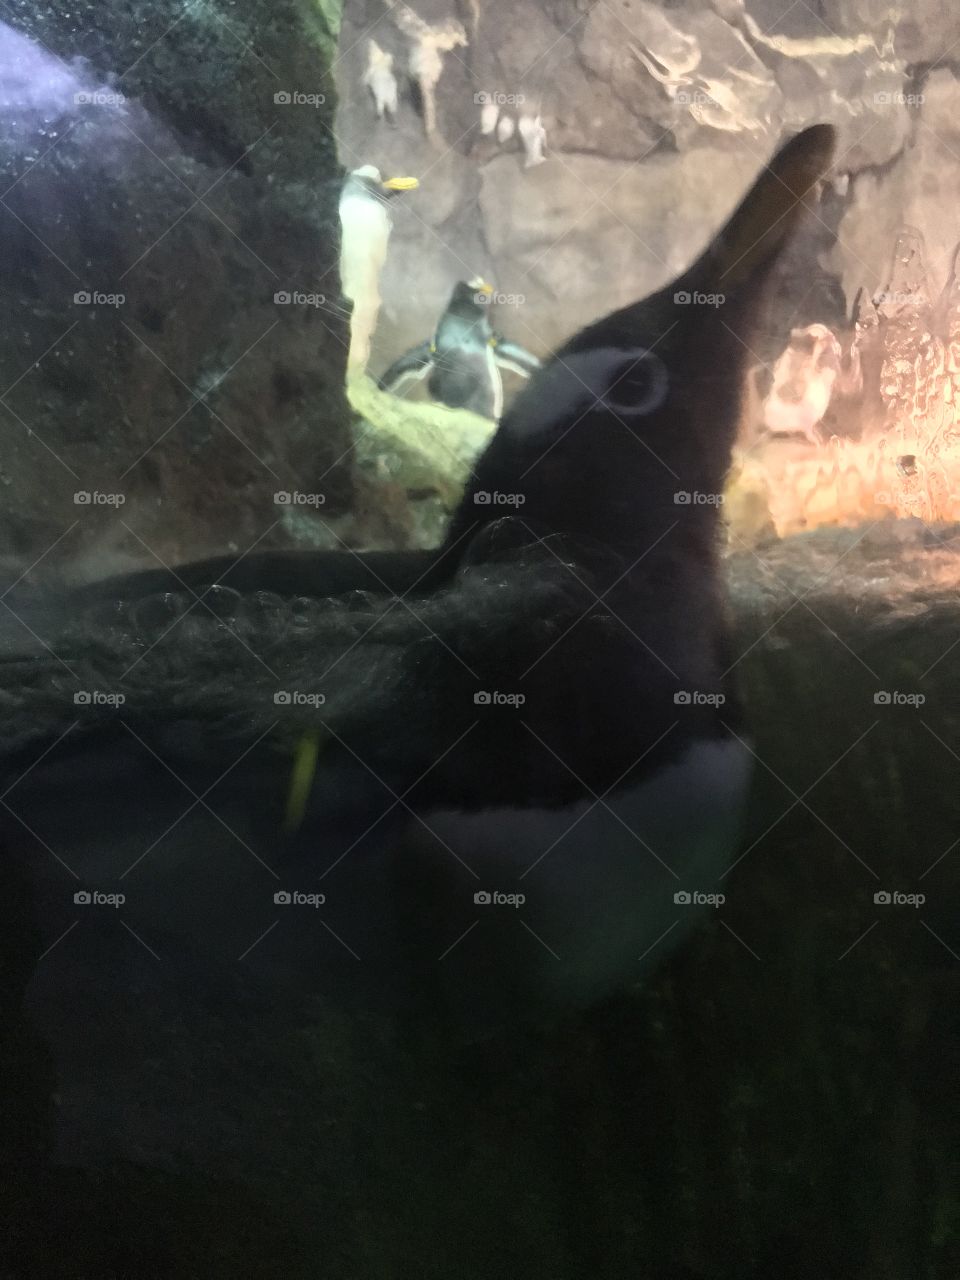 Pittsburgh zoo 